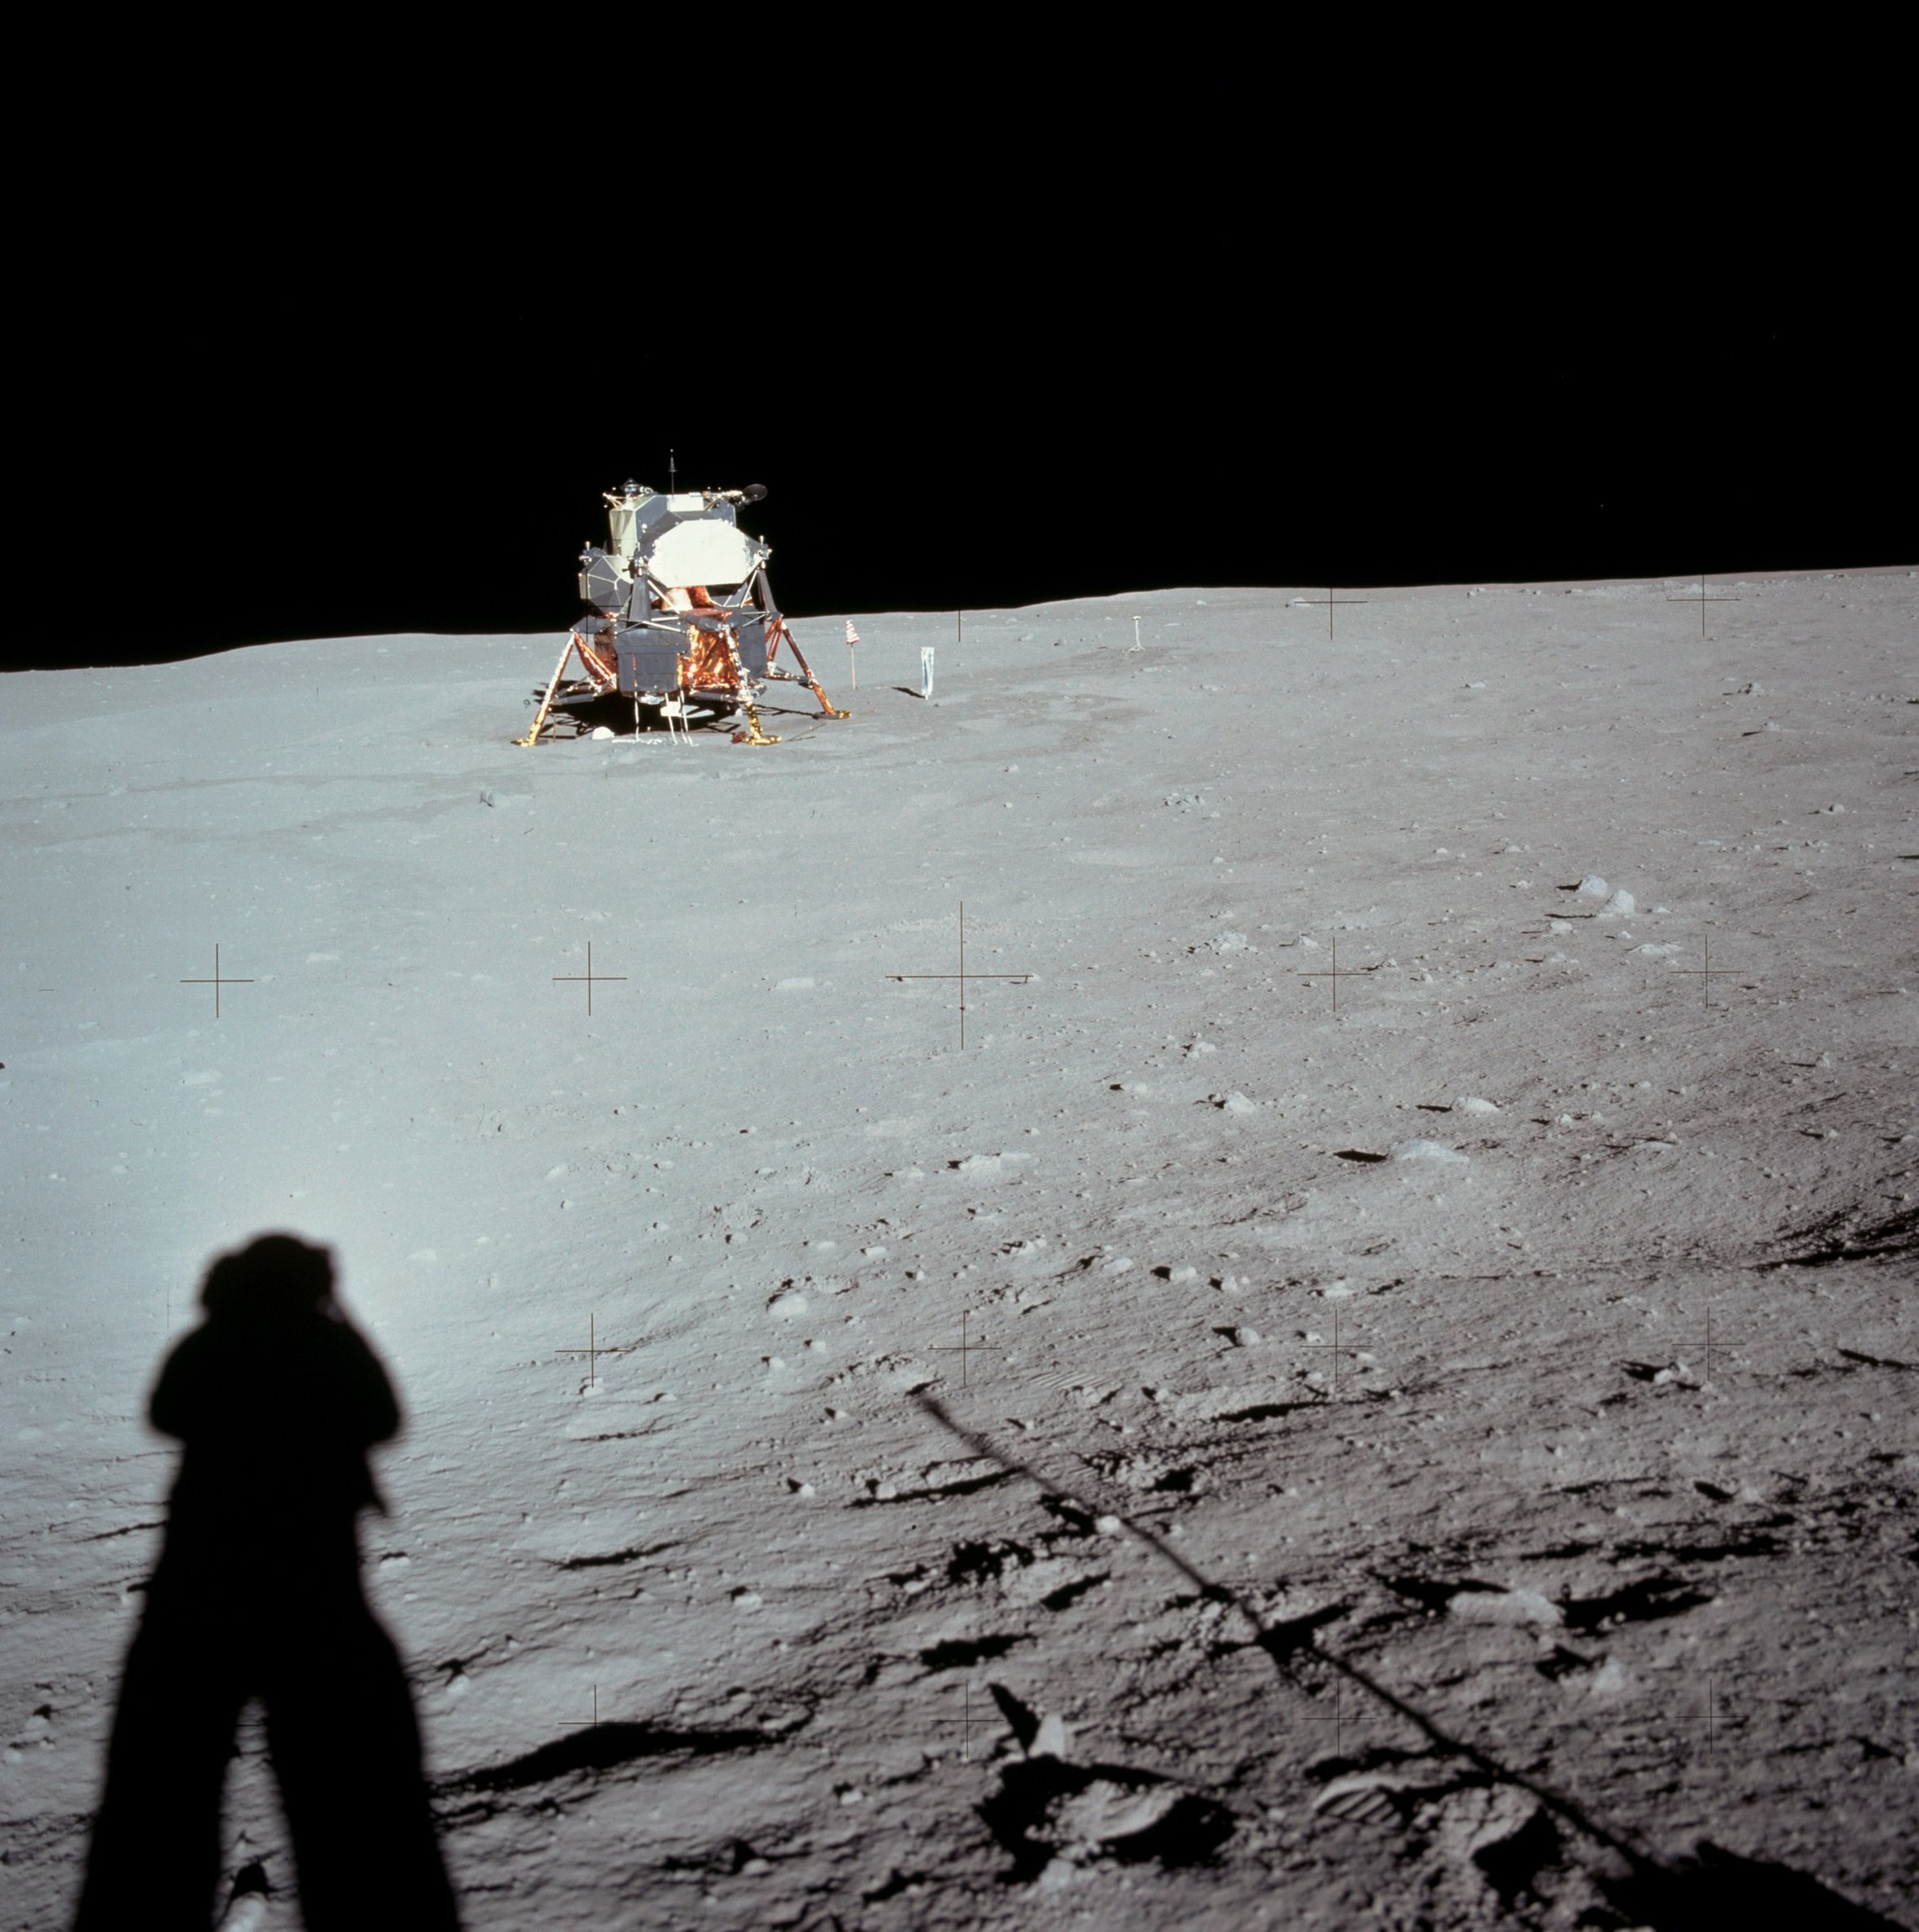 Sombra de Armstrong fotografiando el módulo lunar en la base Tranquilidad en la luna